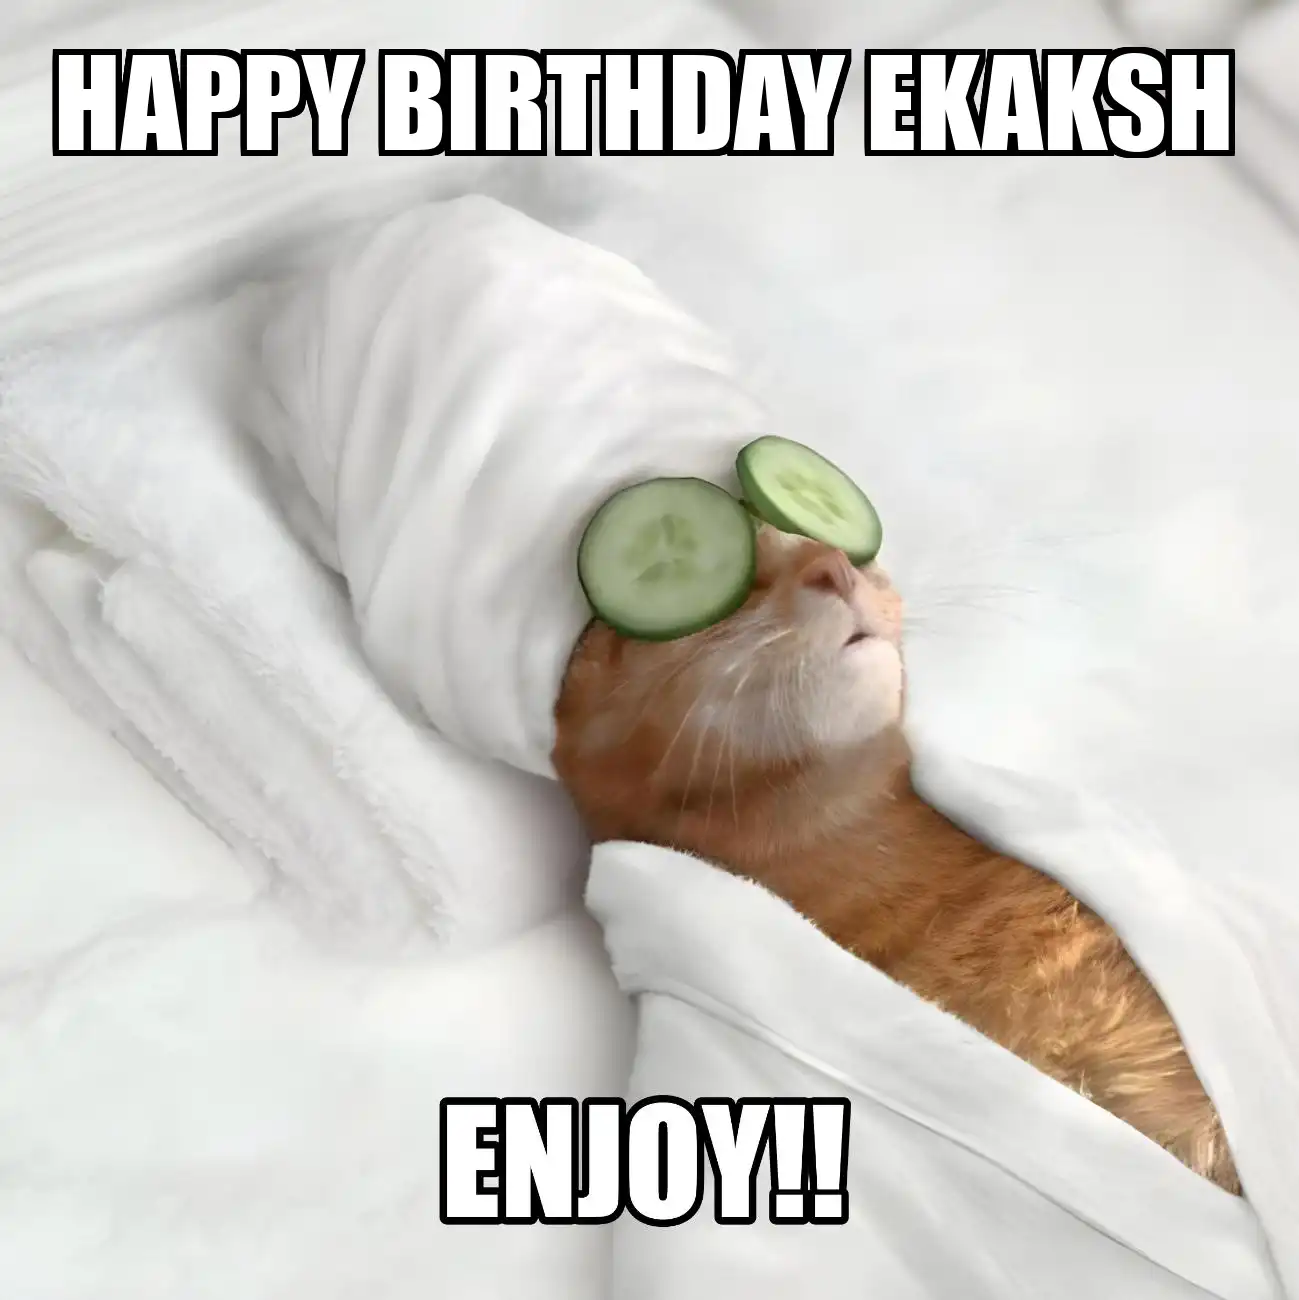 Happy Birthday Ekaksh Enjoy Cat Meme